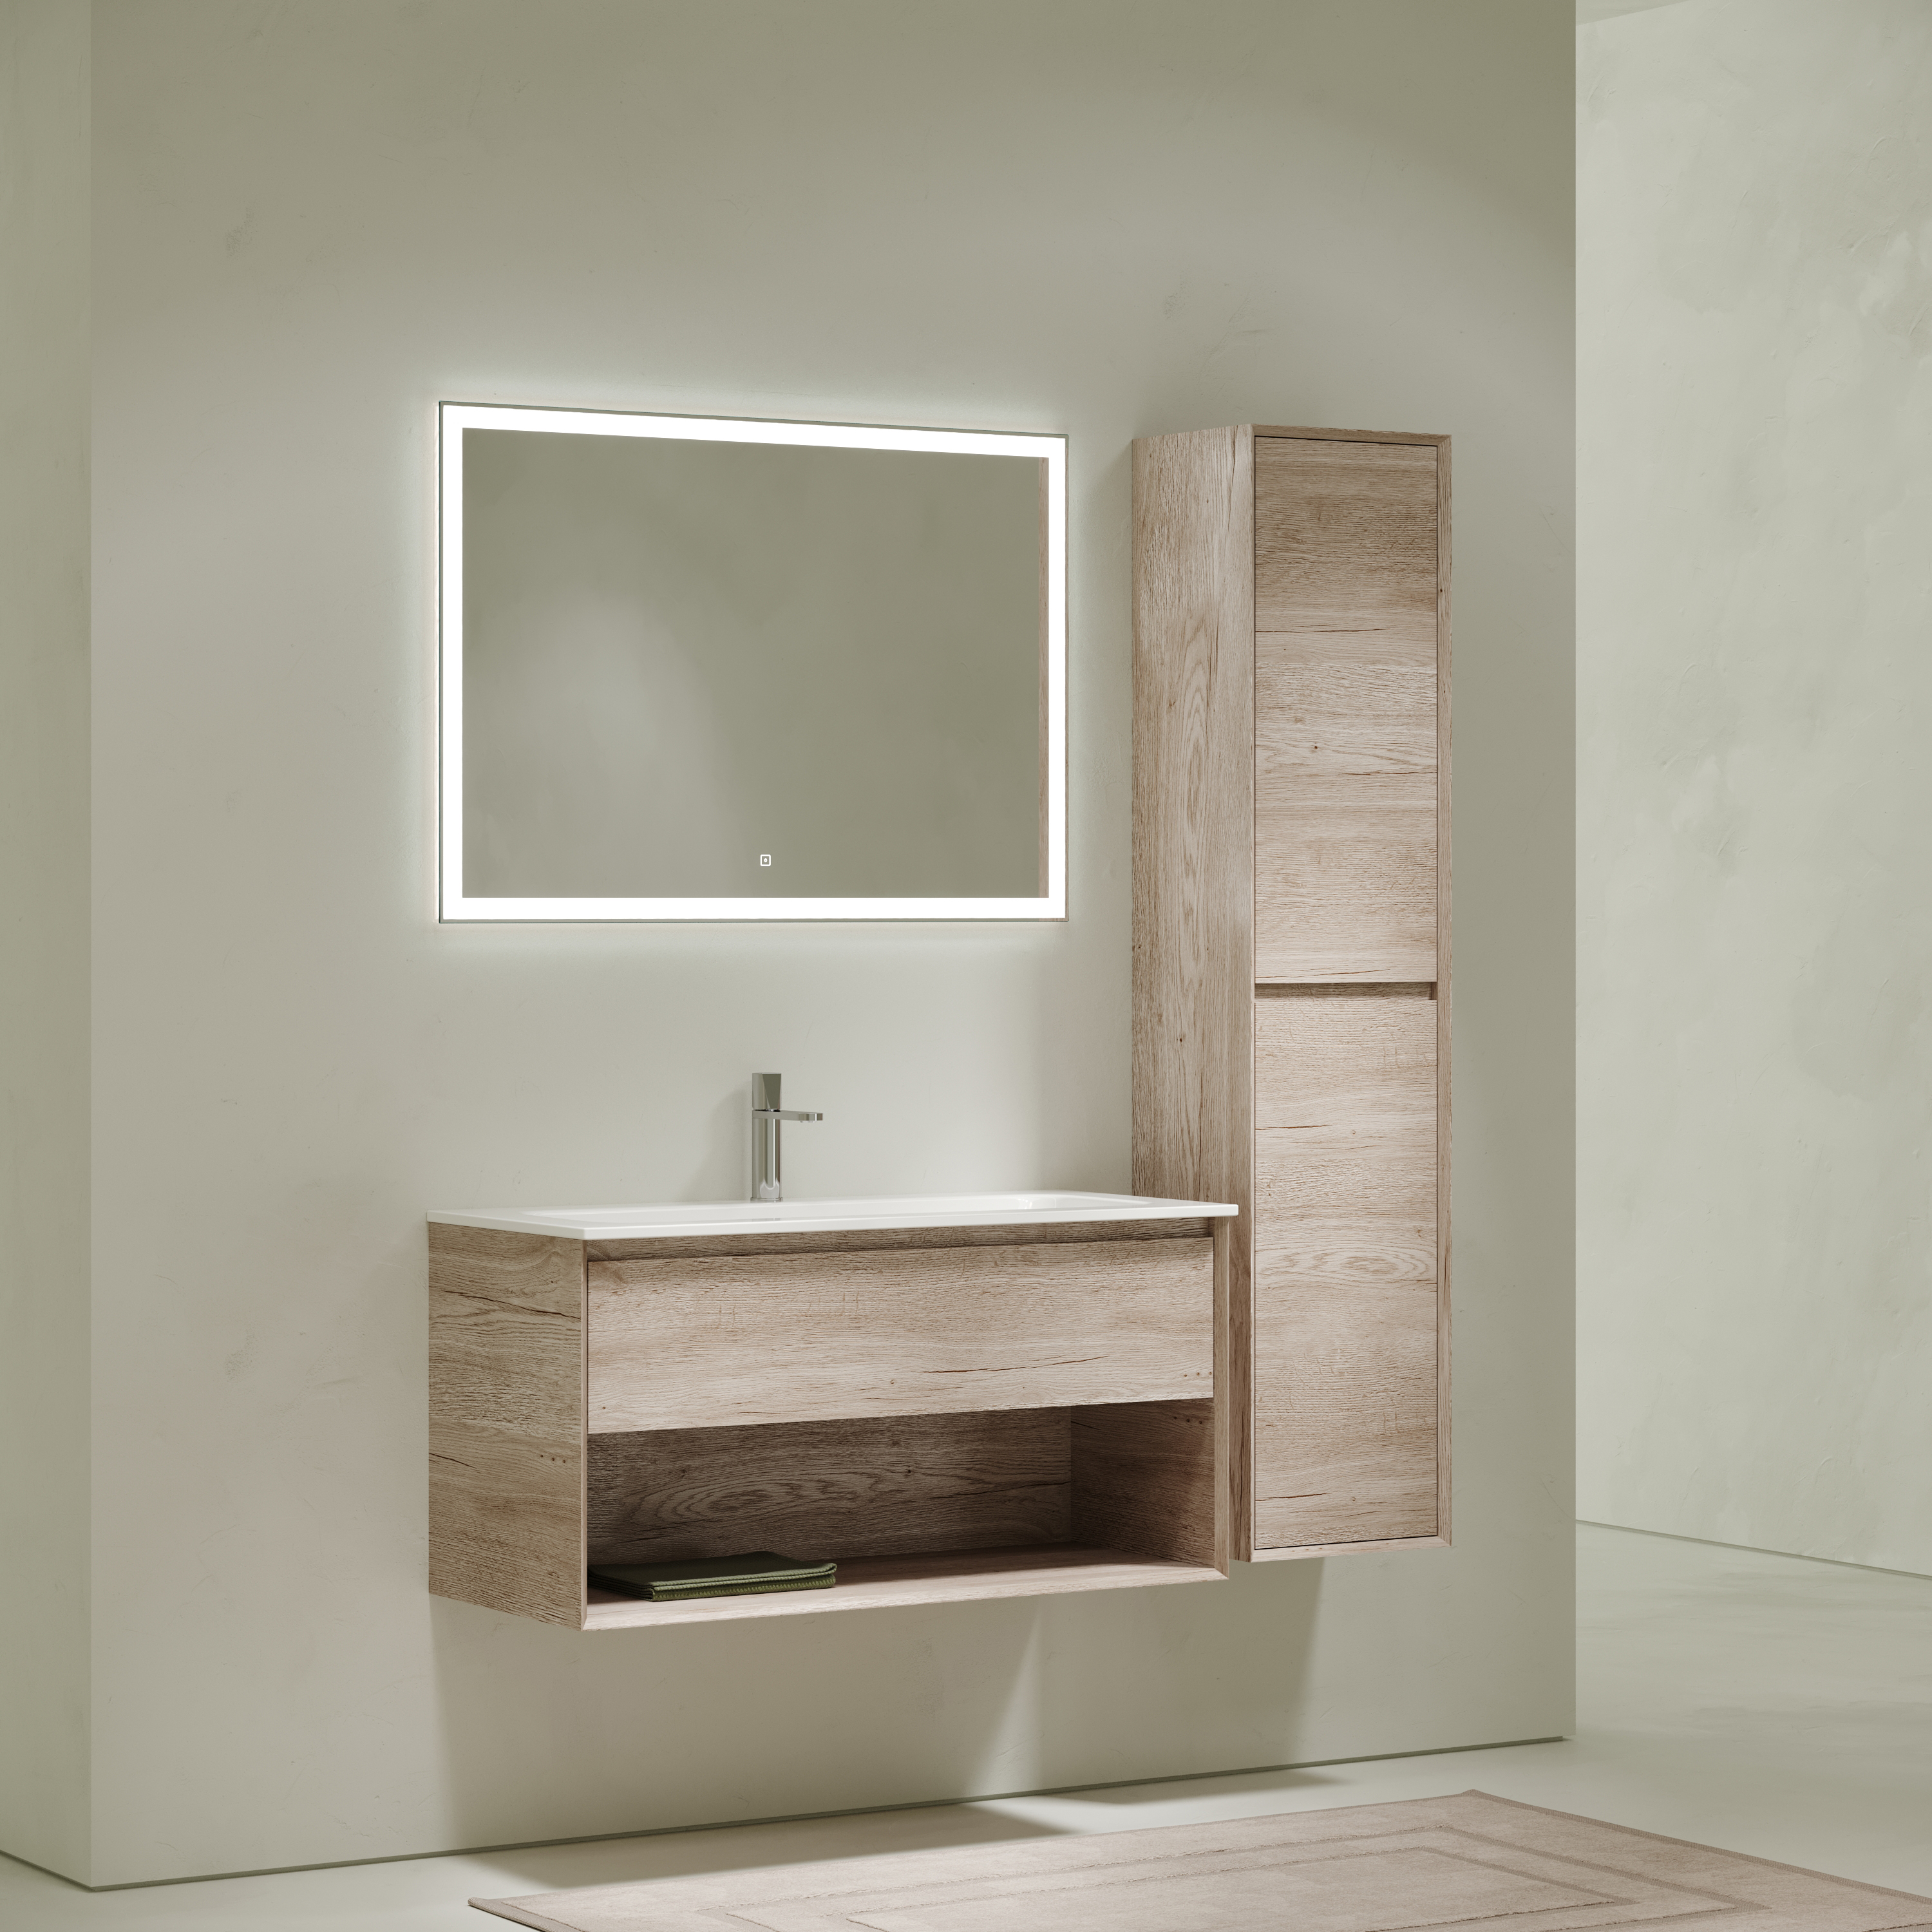 Мебель для ванной комнаты Sancos Marmi 1.0 100 см дуб галифакс натуральный, цвет коричневый MR1.0100EG - фото 2